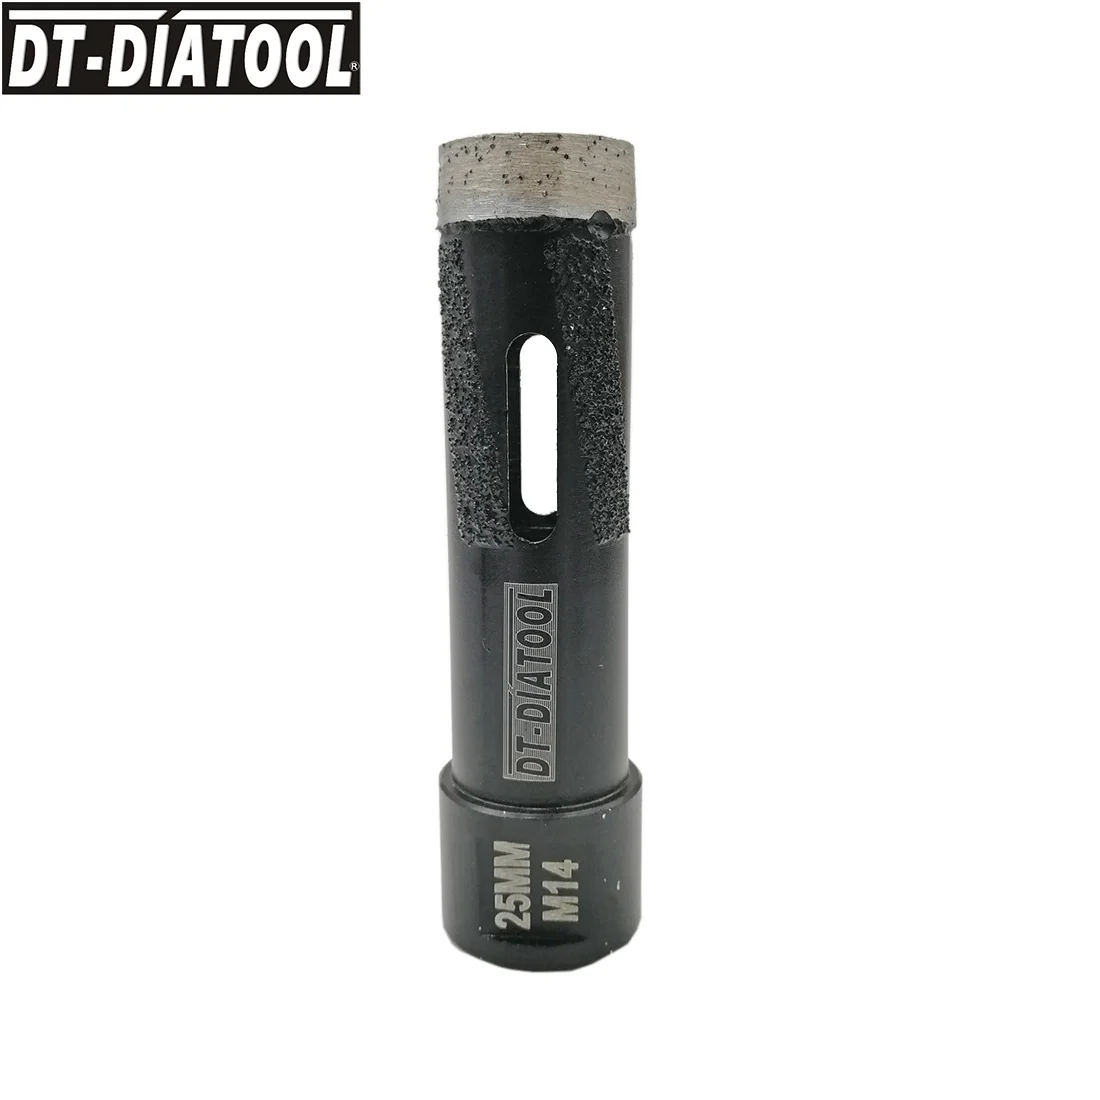 DT_DIATOOL 2 шт./компл. лазерной сварки диаметр 25 мм Алмазный сухой головках бурильное сверло биты M14 нить отверстие увидел для твердый камень